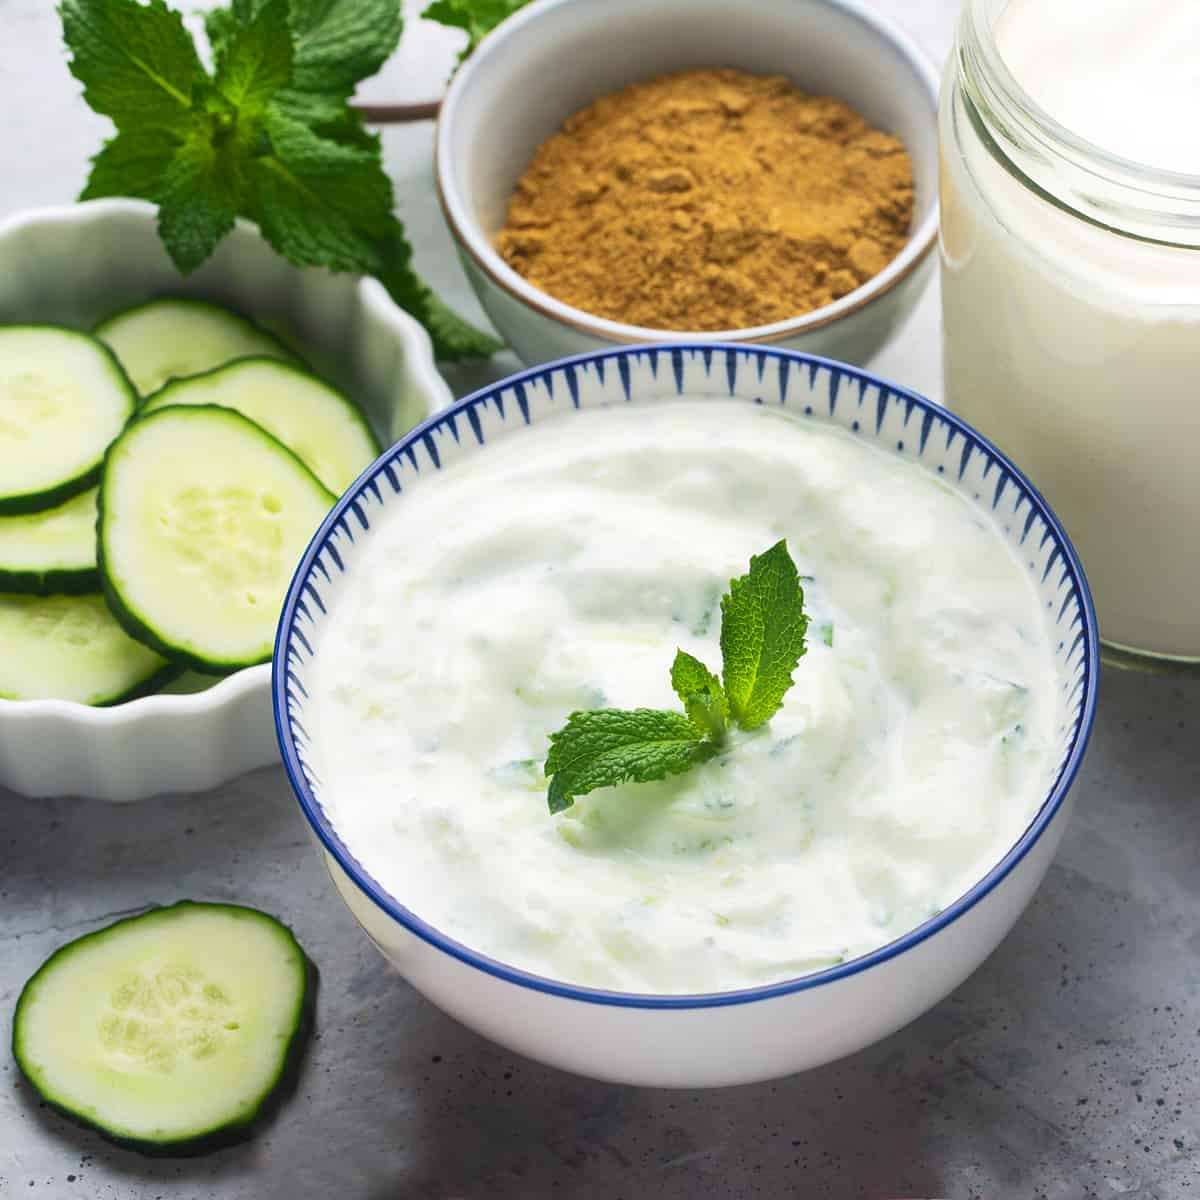 cucumber raita recipe authentic traditional indian restaurant yogurt sauce